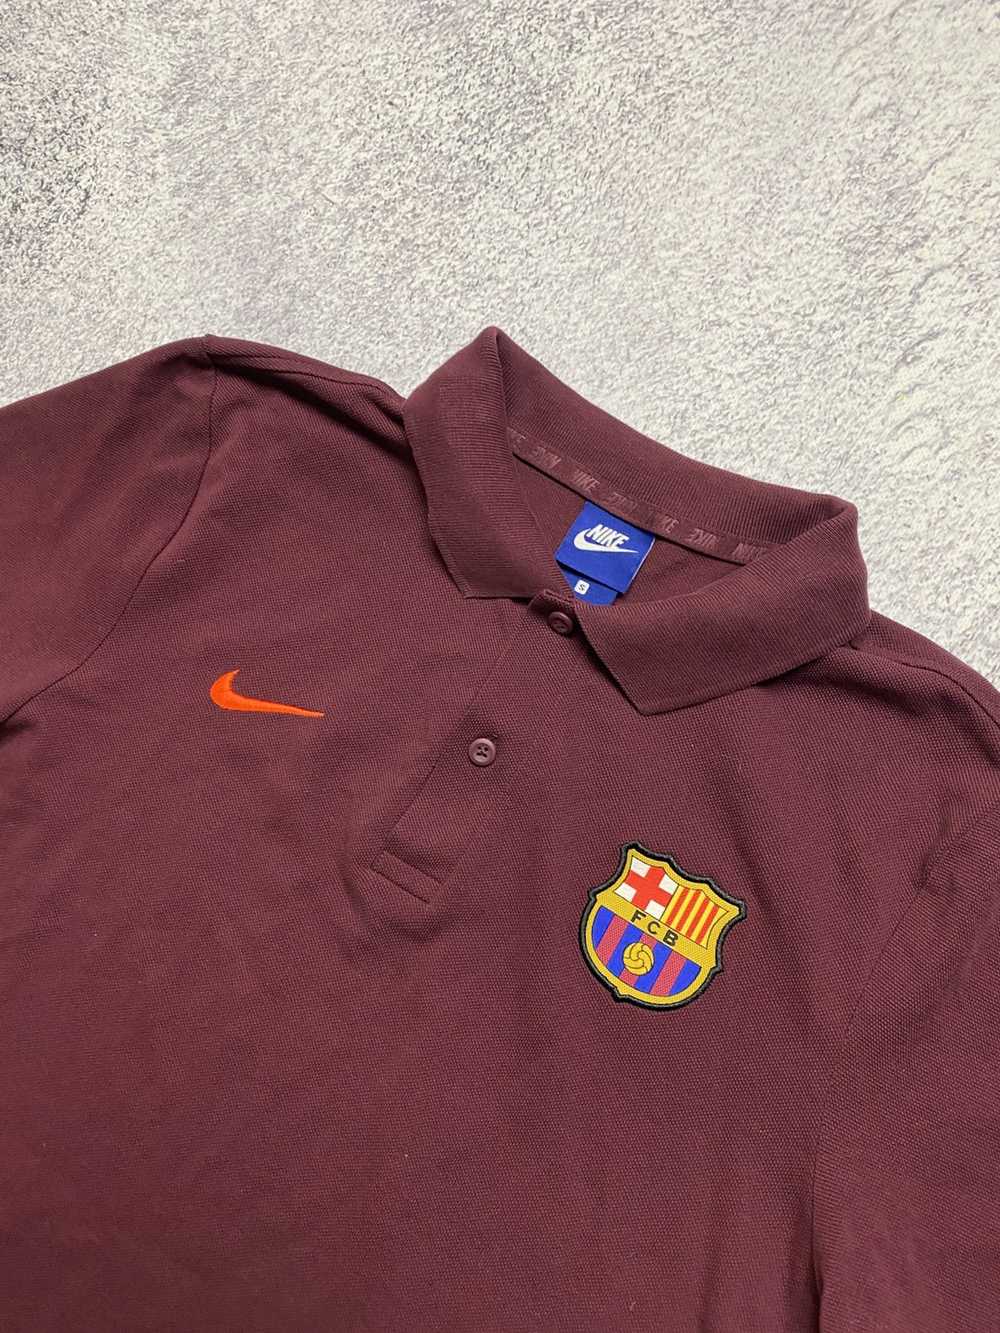 Nike × Soccer Jersey × Vintage Nike Team Barcelon… - image 4